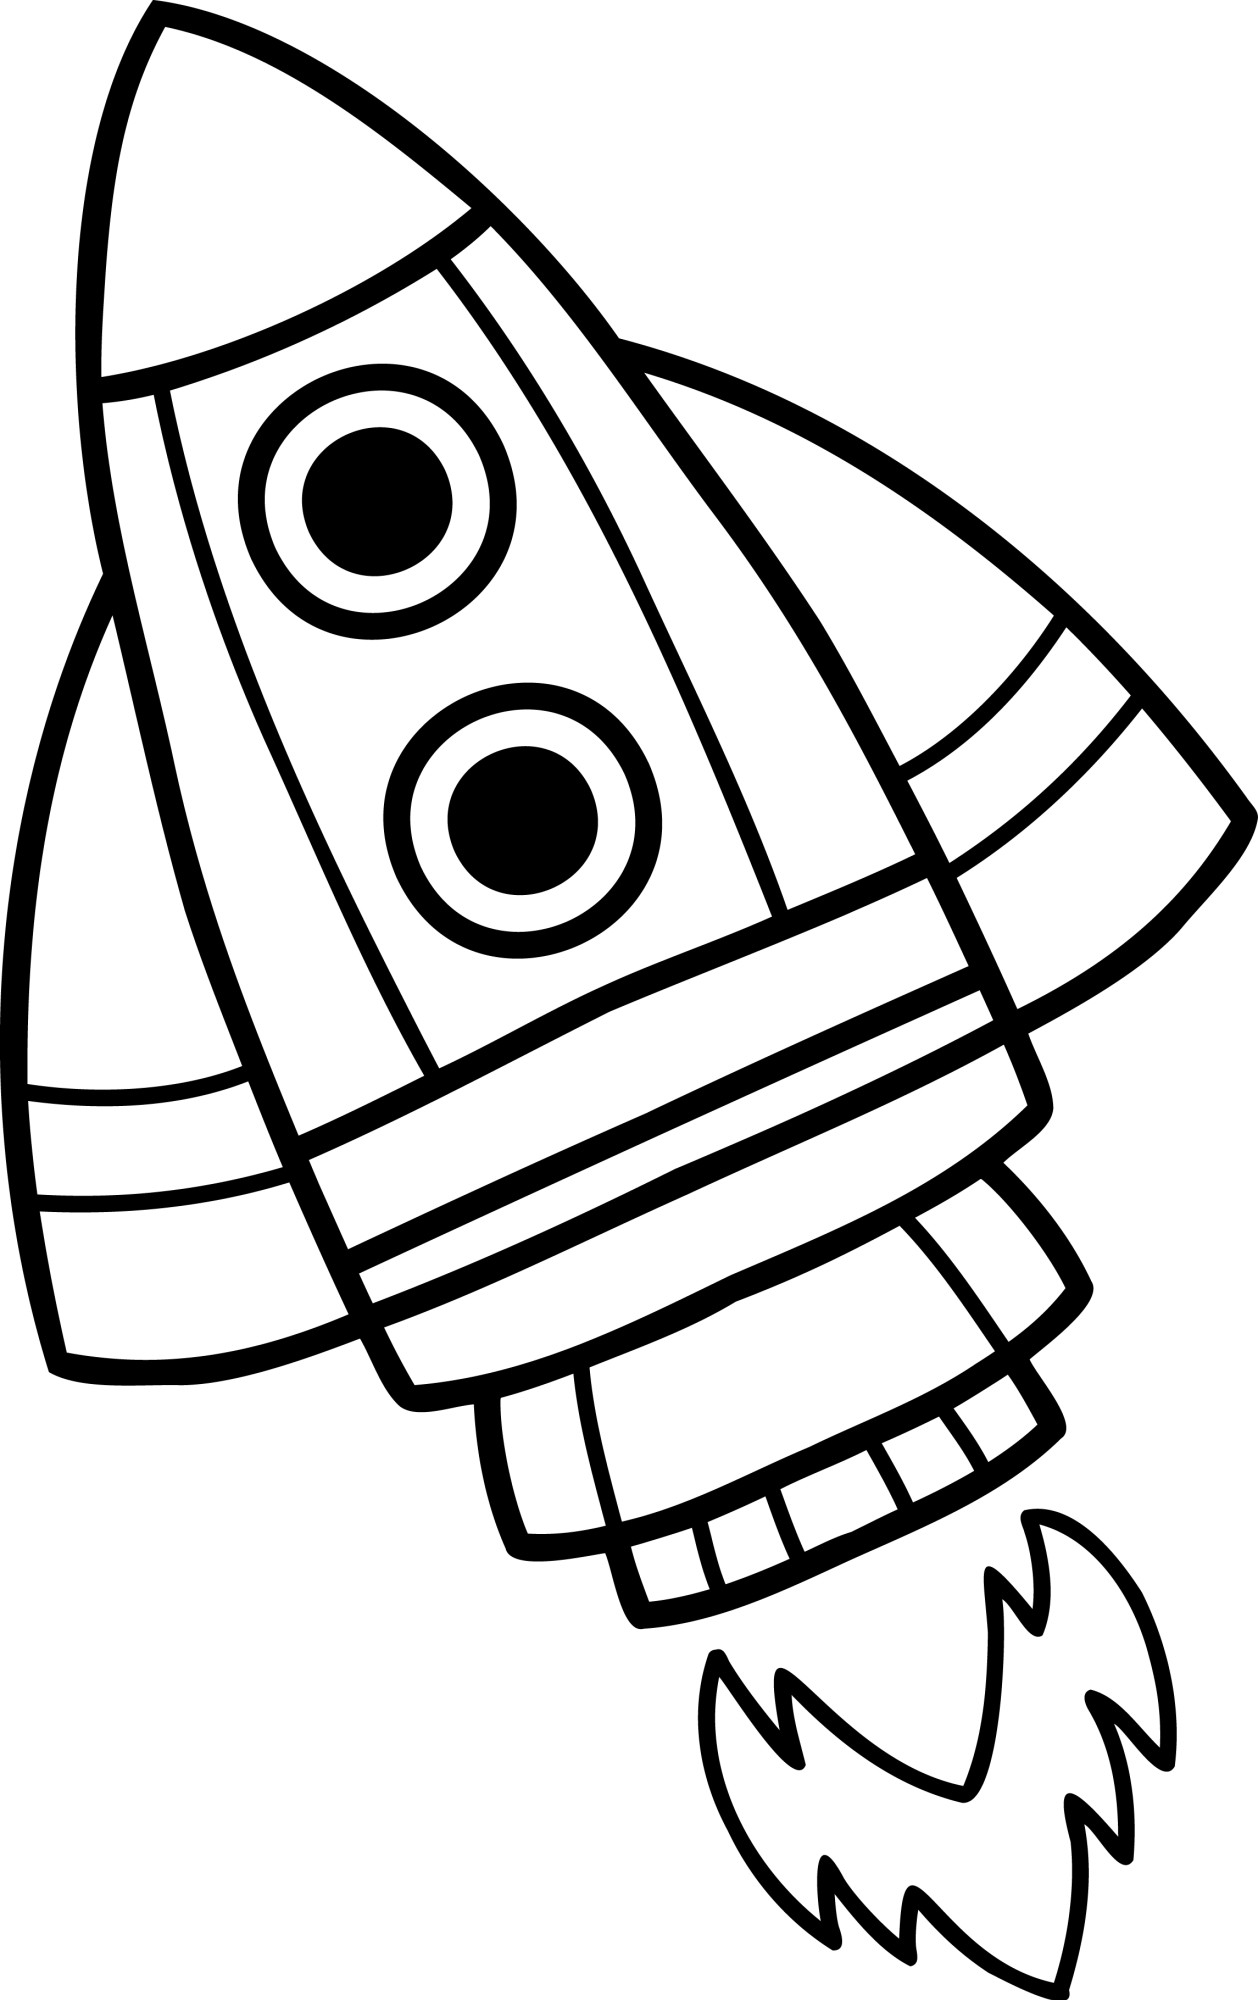 Раскраска для детей: игрушка космическая ракета